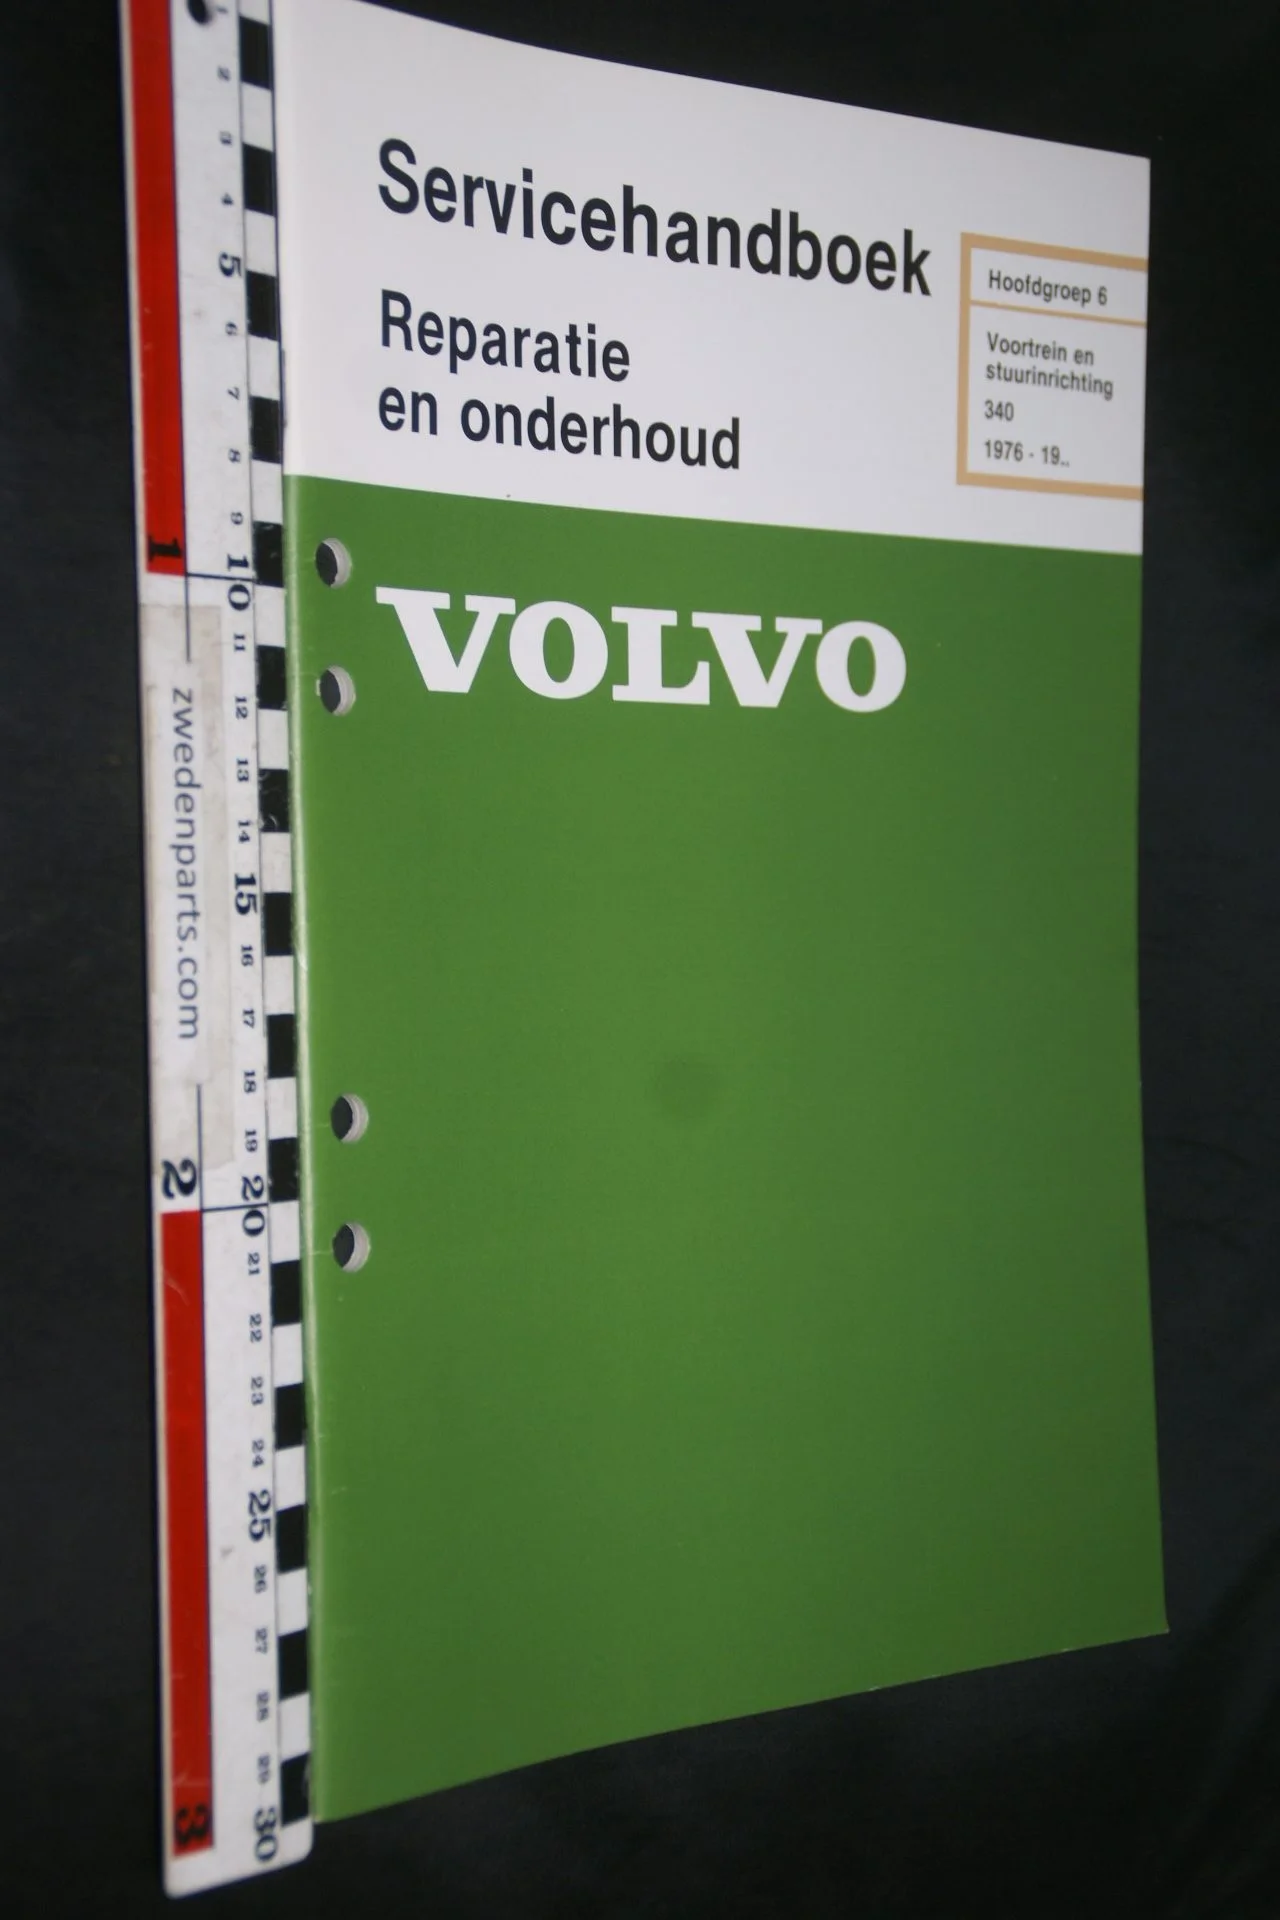 DSC07267 1981 origineel Volvo 340 servicehandboek  6 voortrein en stuurinrichting 1 van 800 TP 12165-2